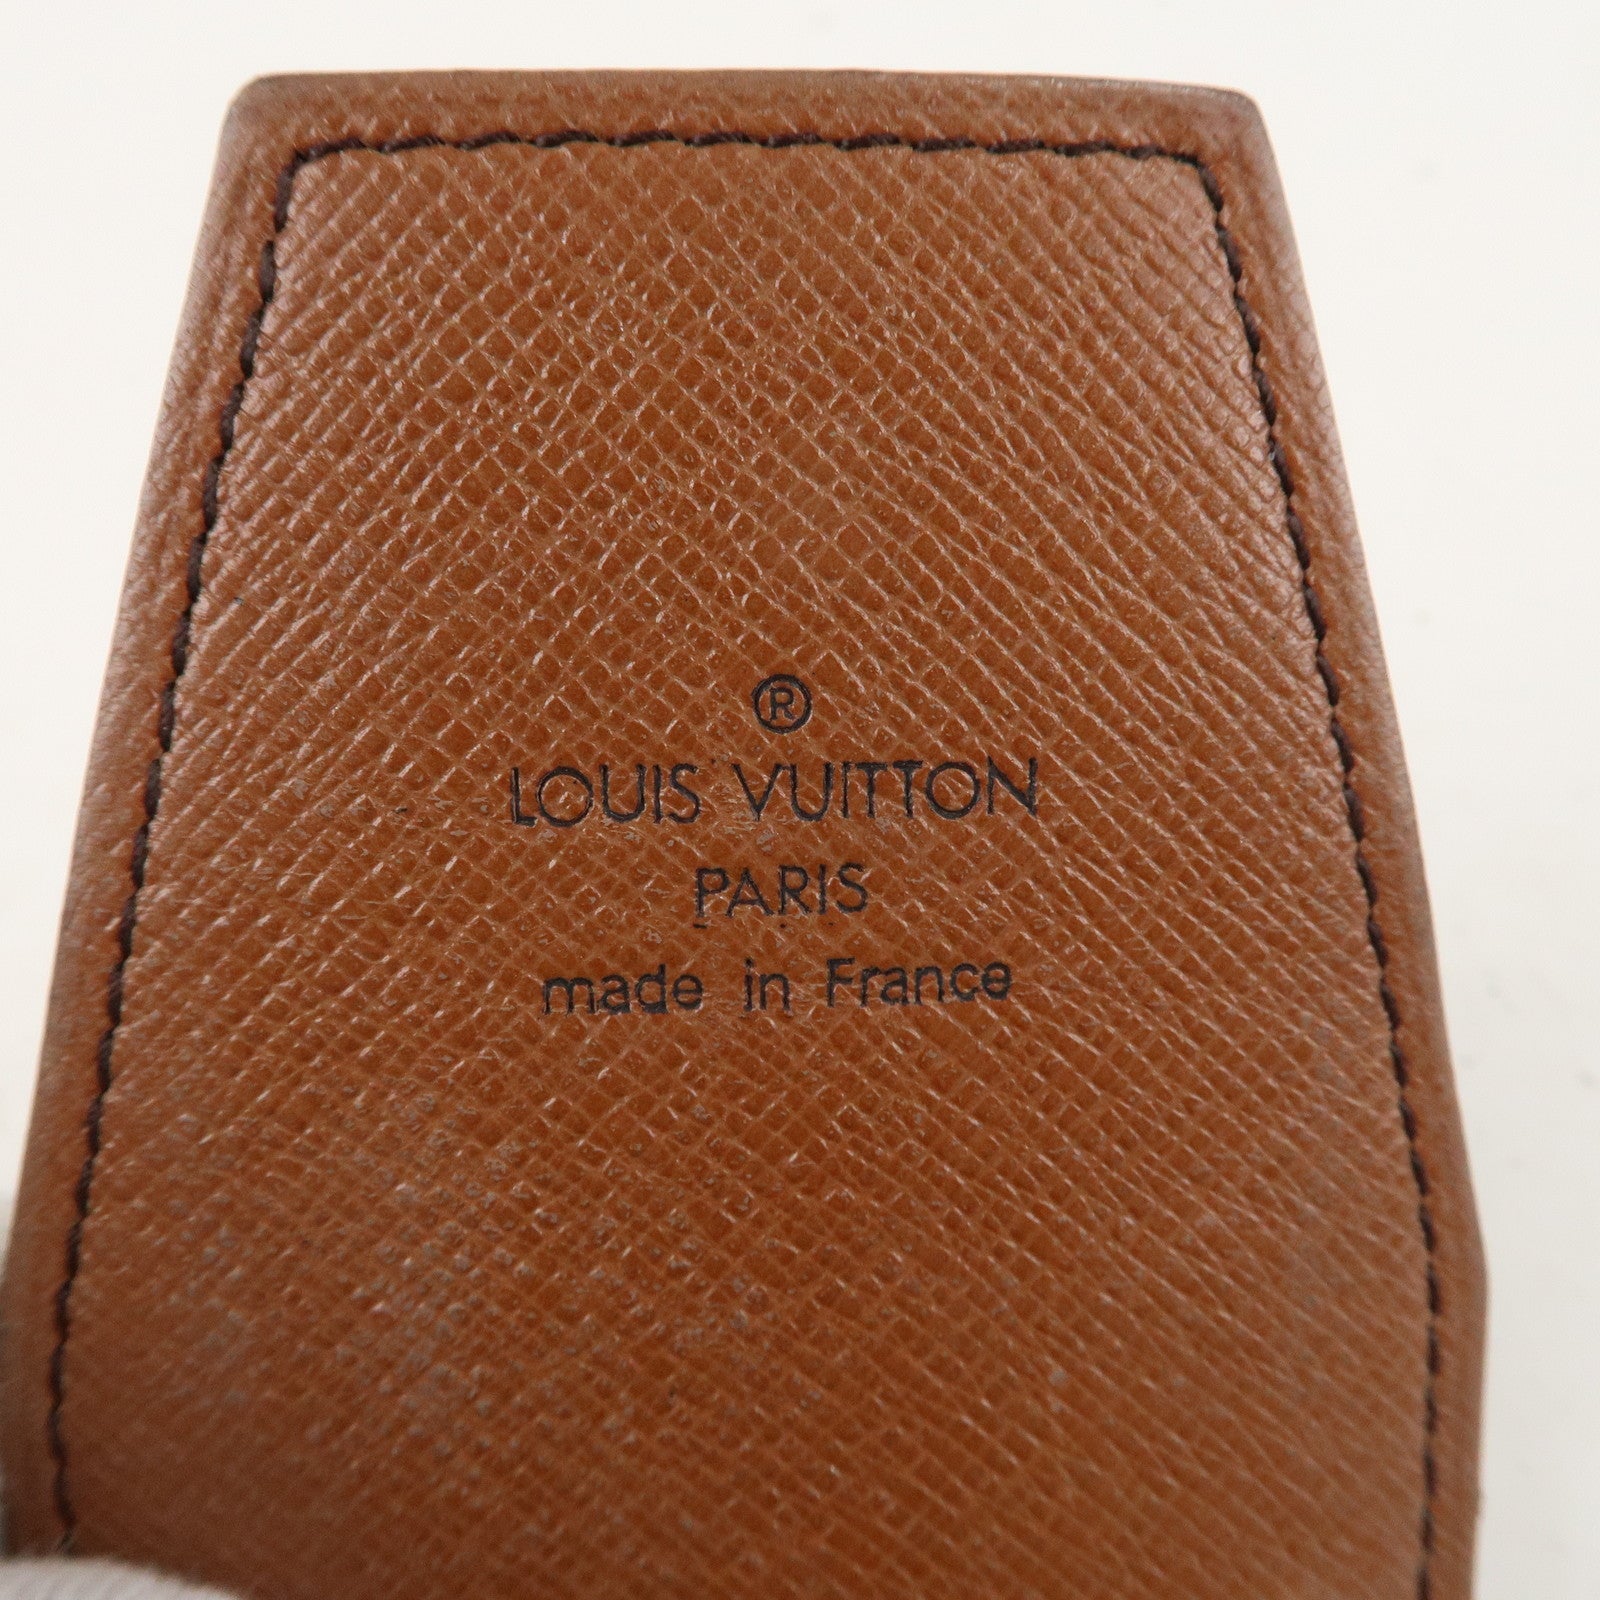 Louis-Vuitton-Set-of-3-Monogram-Etui-Garet-Cigarette-Case-M63024